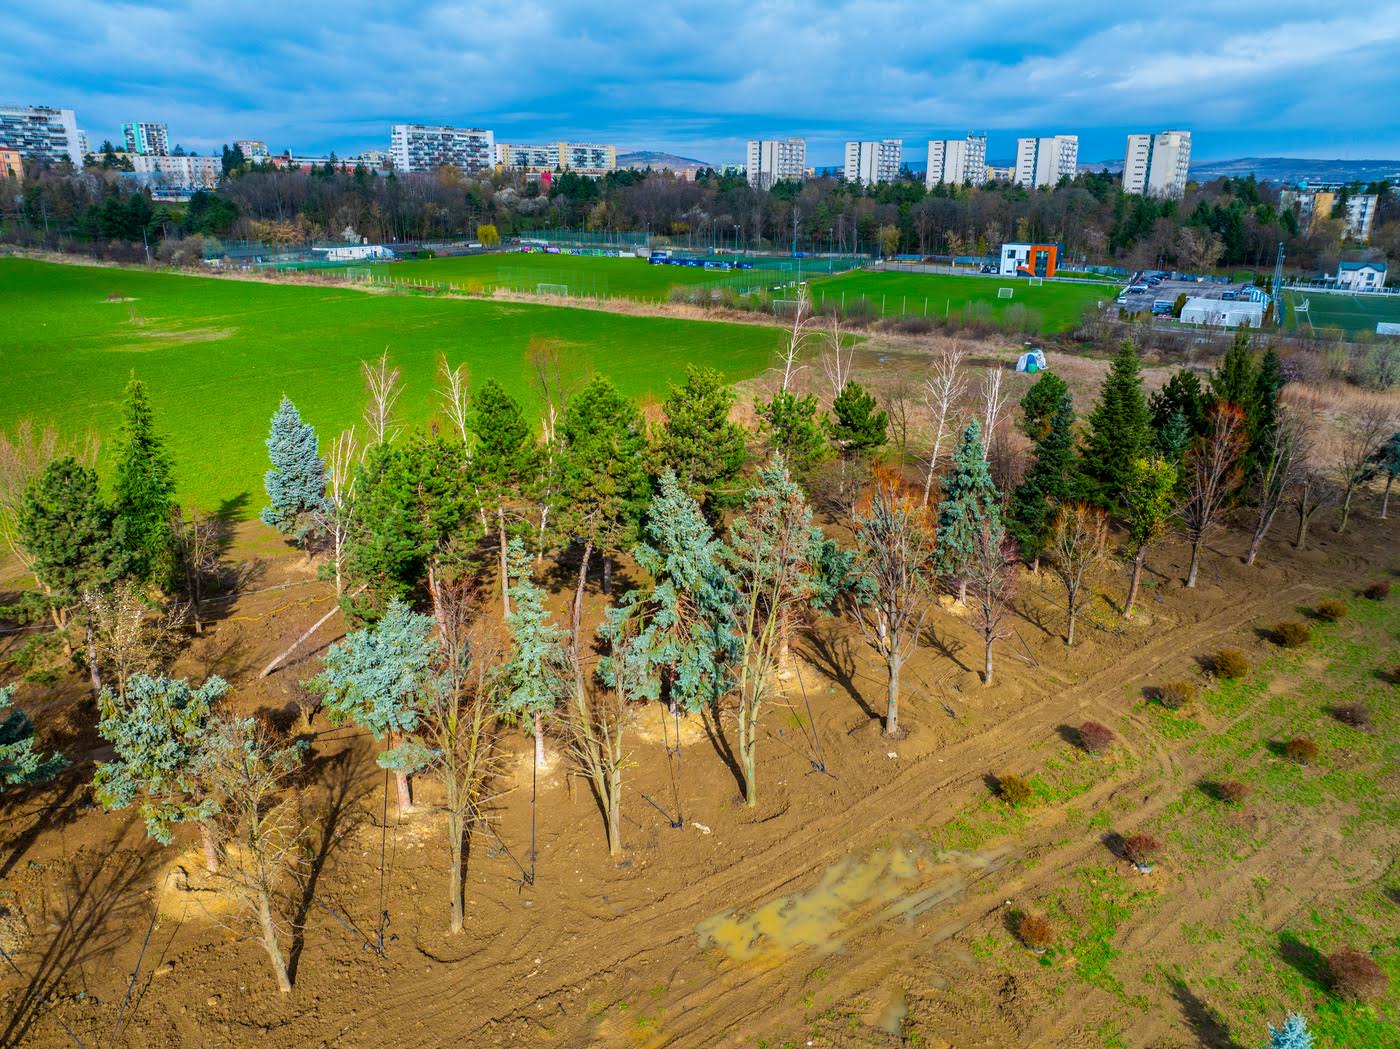 VIDEO: Copacii Carbochim se păstrează. Revin în același loc, într-un nou parc deschis către Someș, parte din proiectul de reconversie a fostei platforme industriale